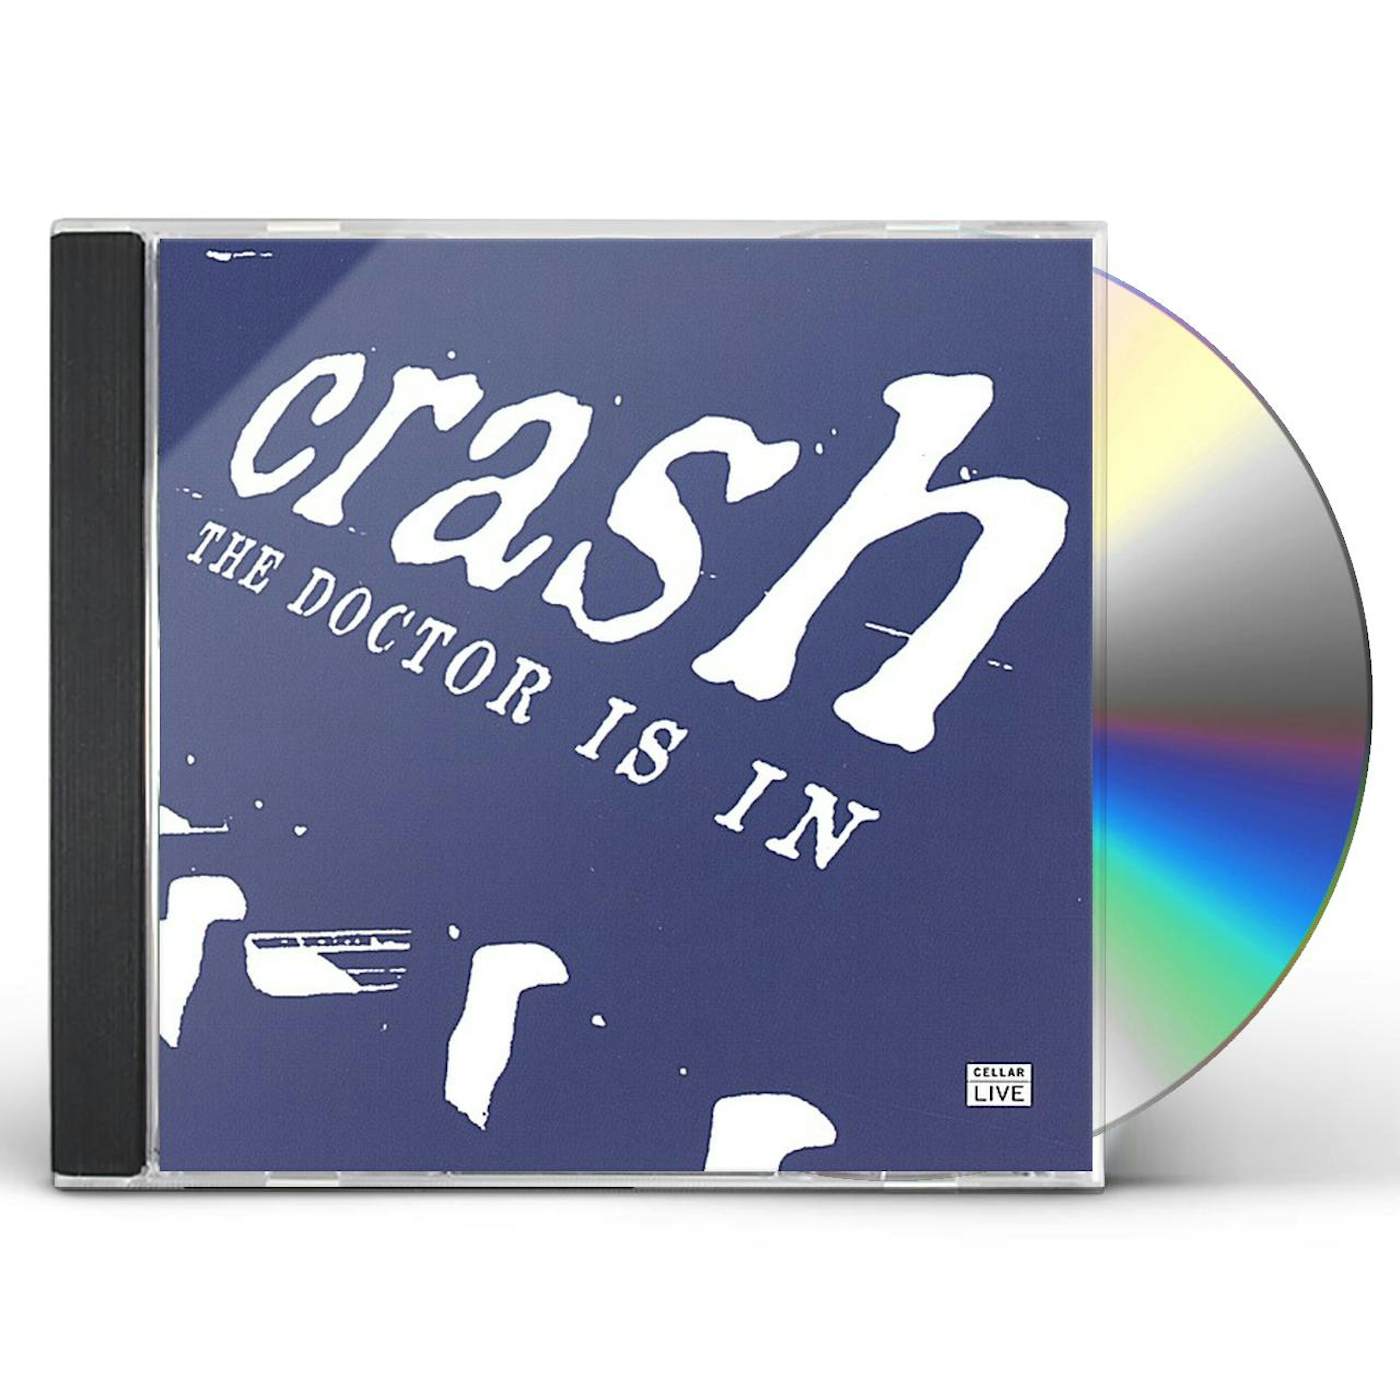 Crash DR. IS IN CD